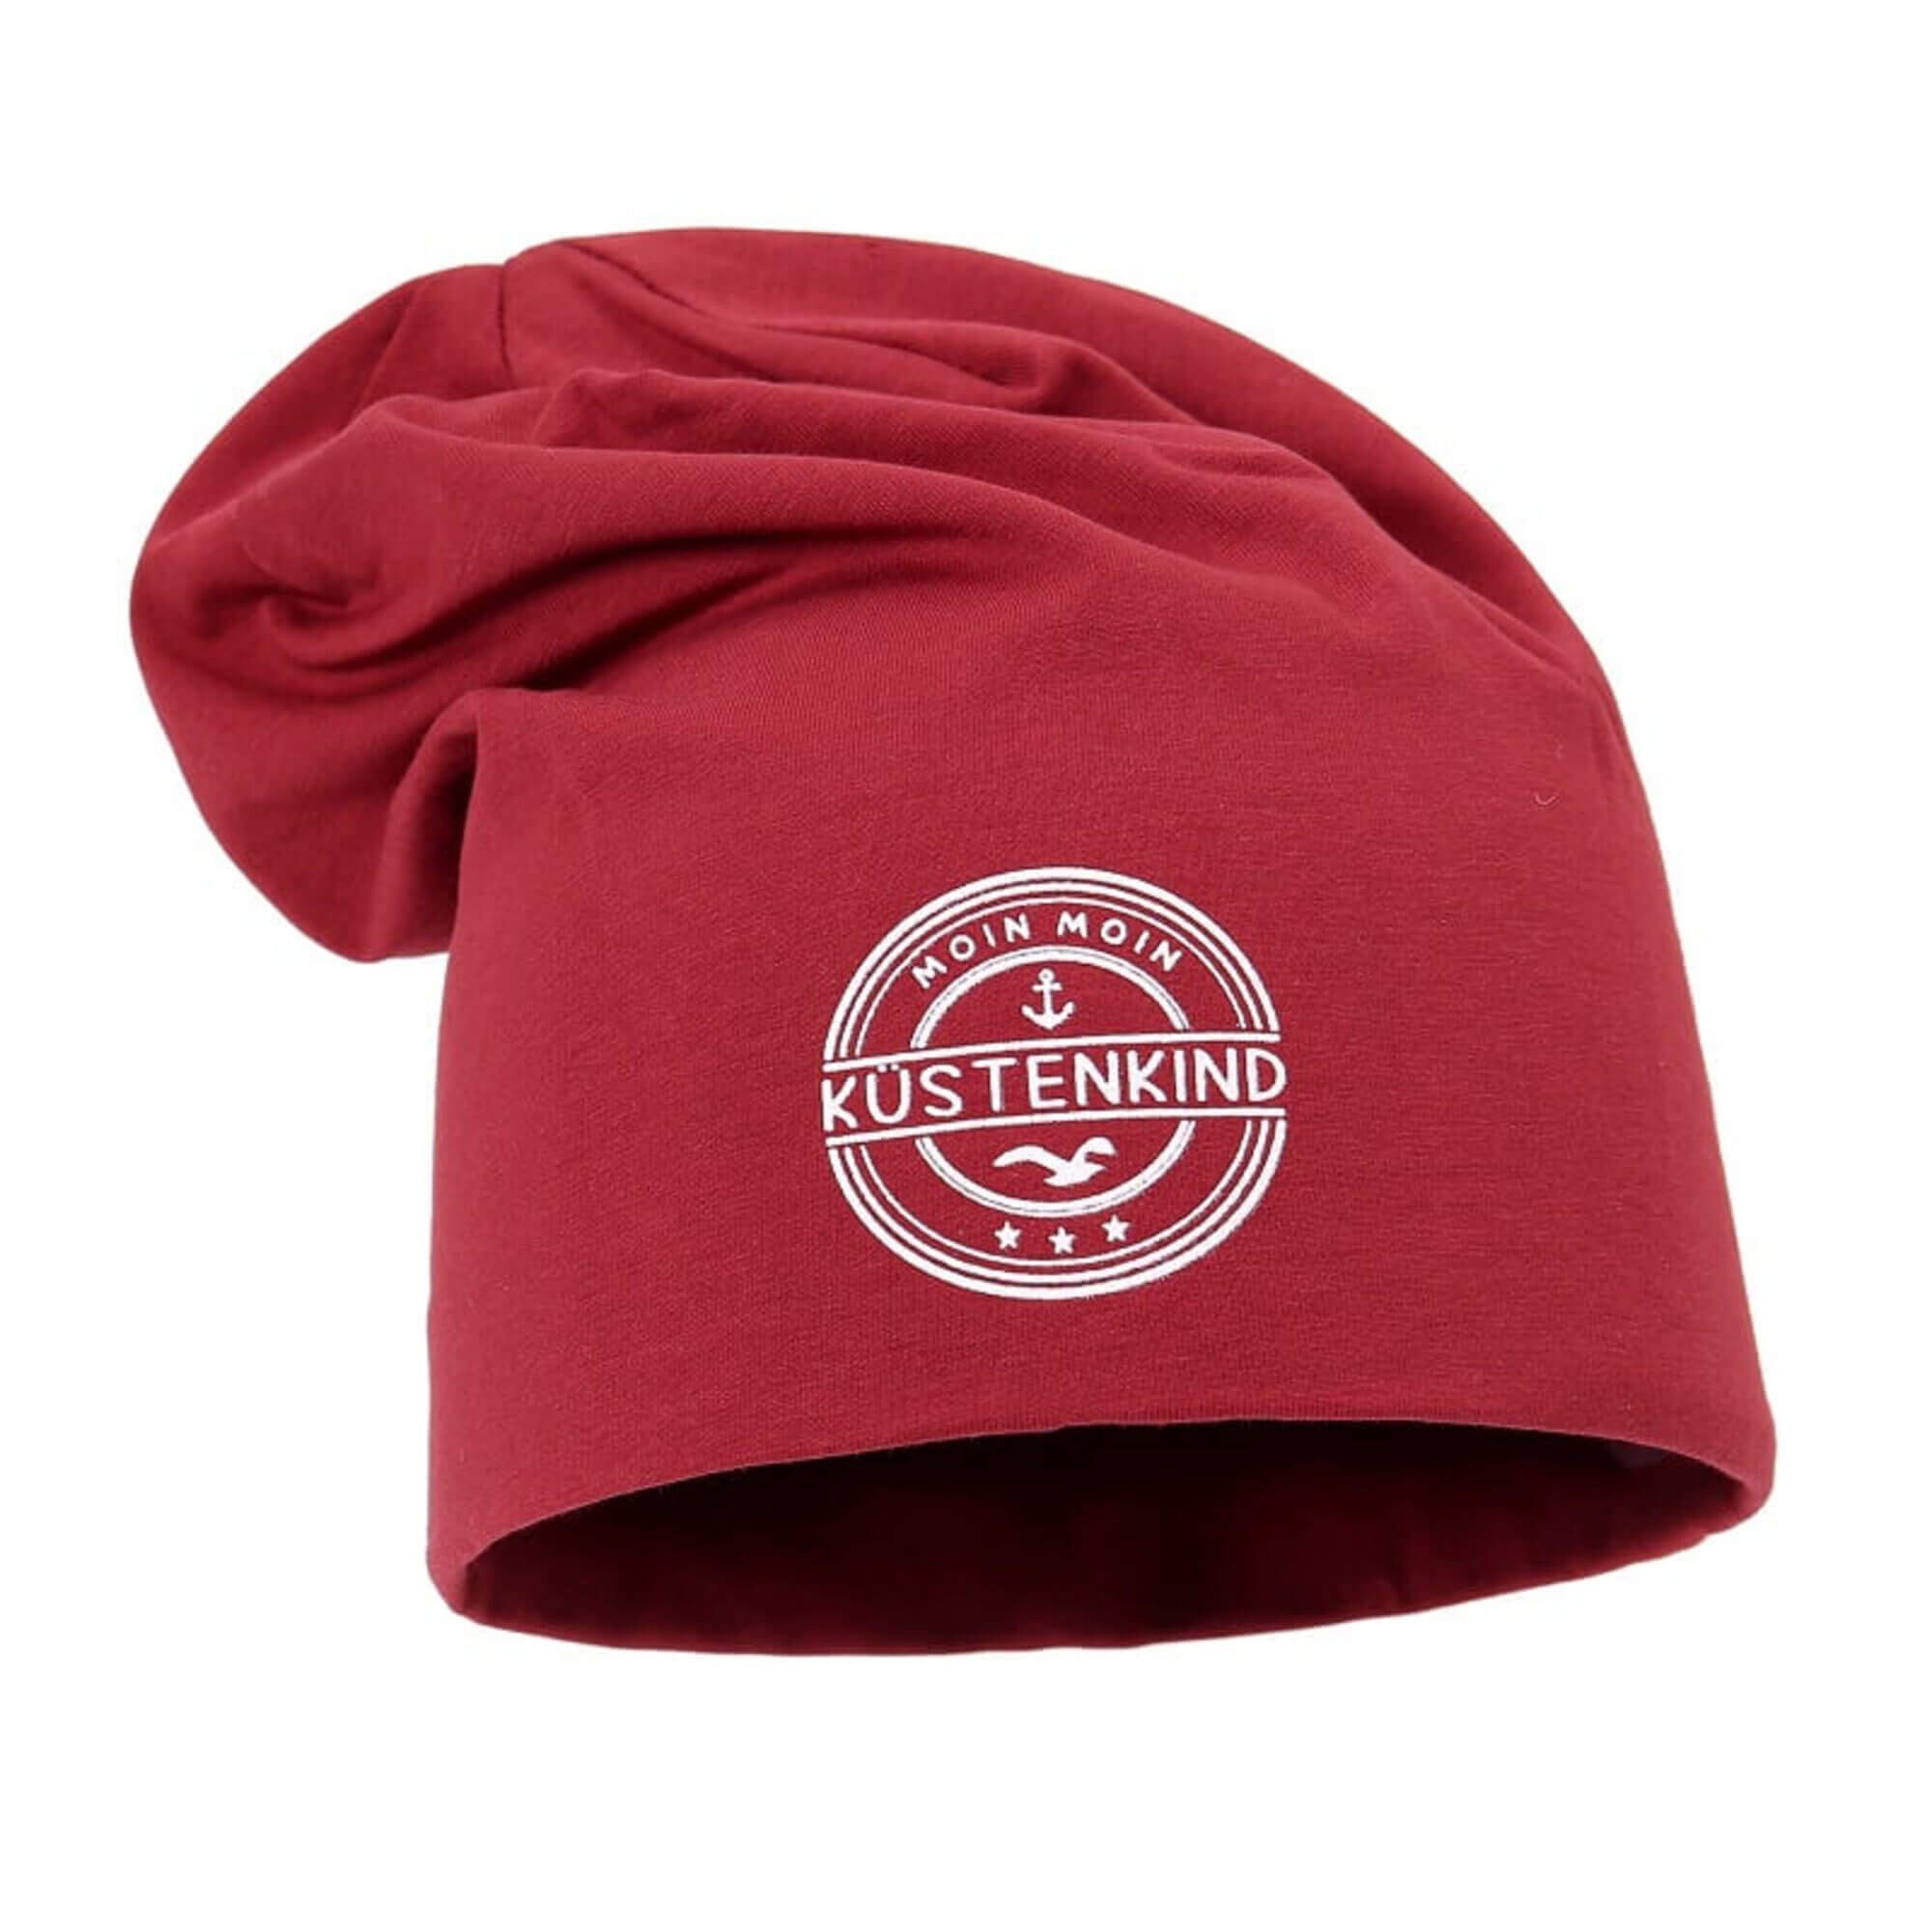 Leoberg Beanie Unisex Mütze Damen Herren - Kopfbedeckung verschiedenen Designs Rot-158044